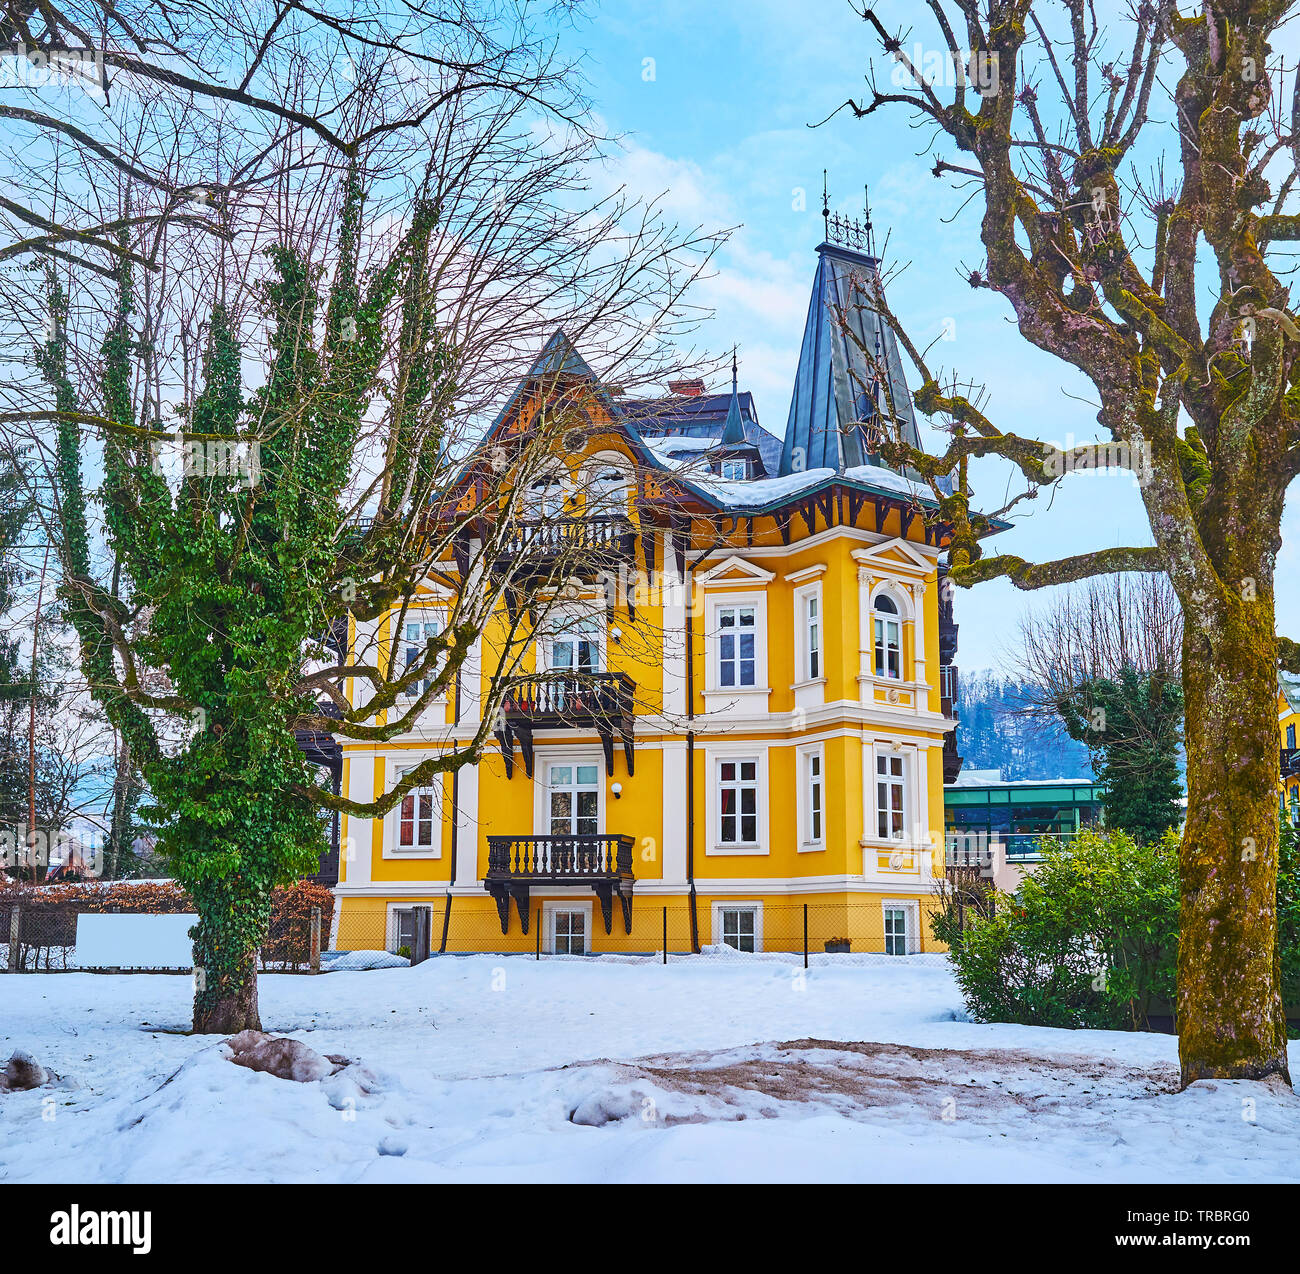 La vista sulla Scenic vintage mansion attraverso gli alberi del giardino d'inverno, situato in Kurhausstrasse, Bad Ischl, Salzkammergut, Austria Foto Stock